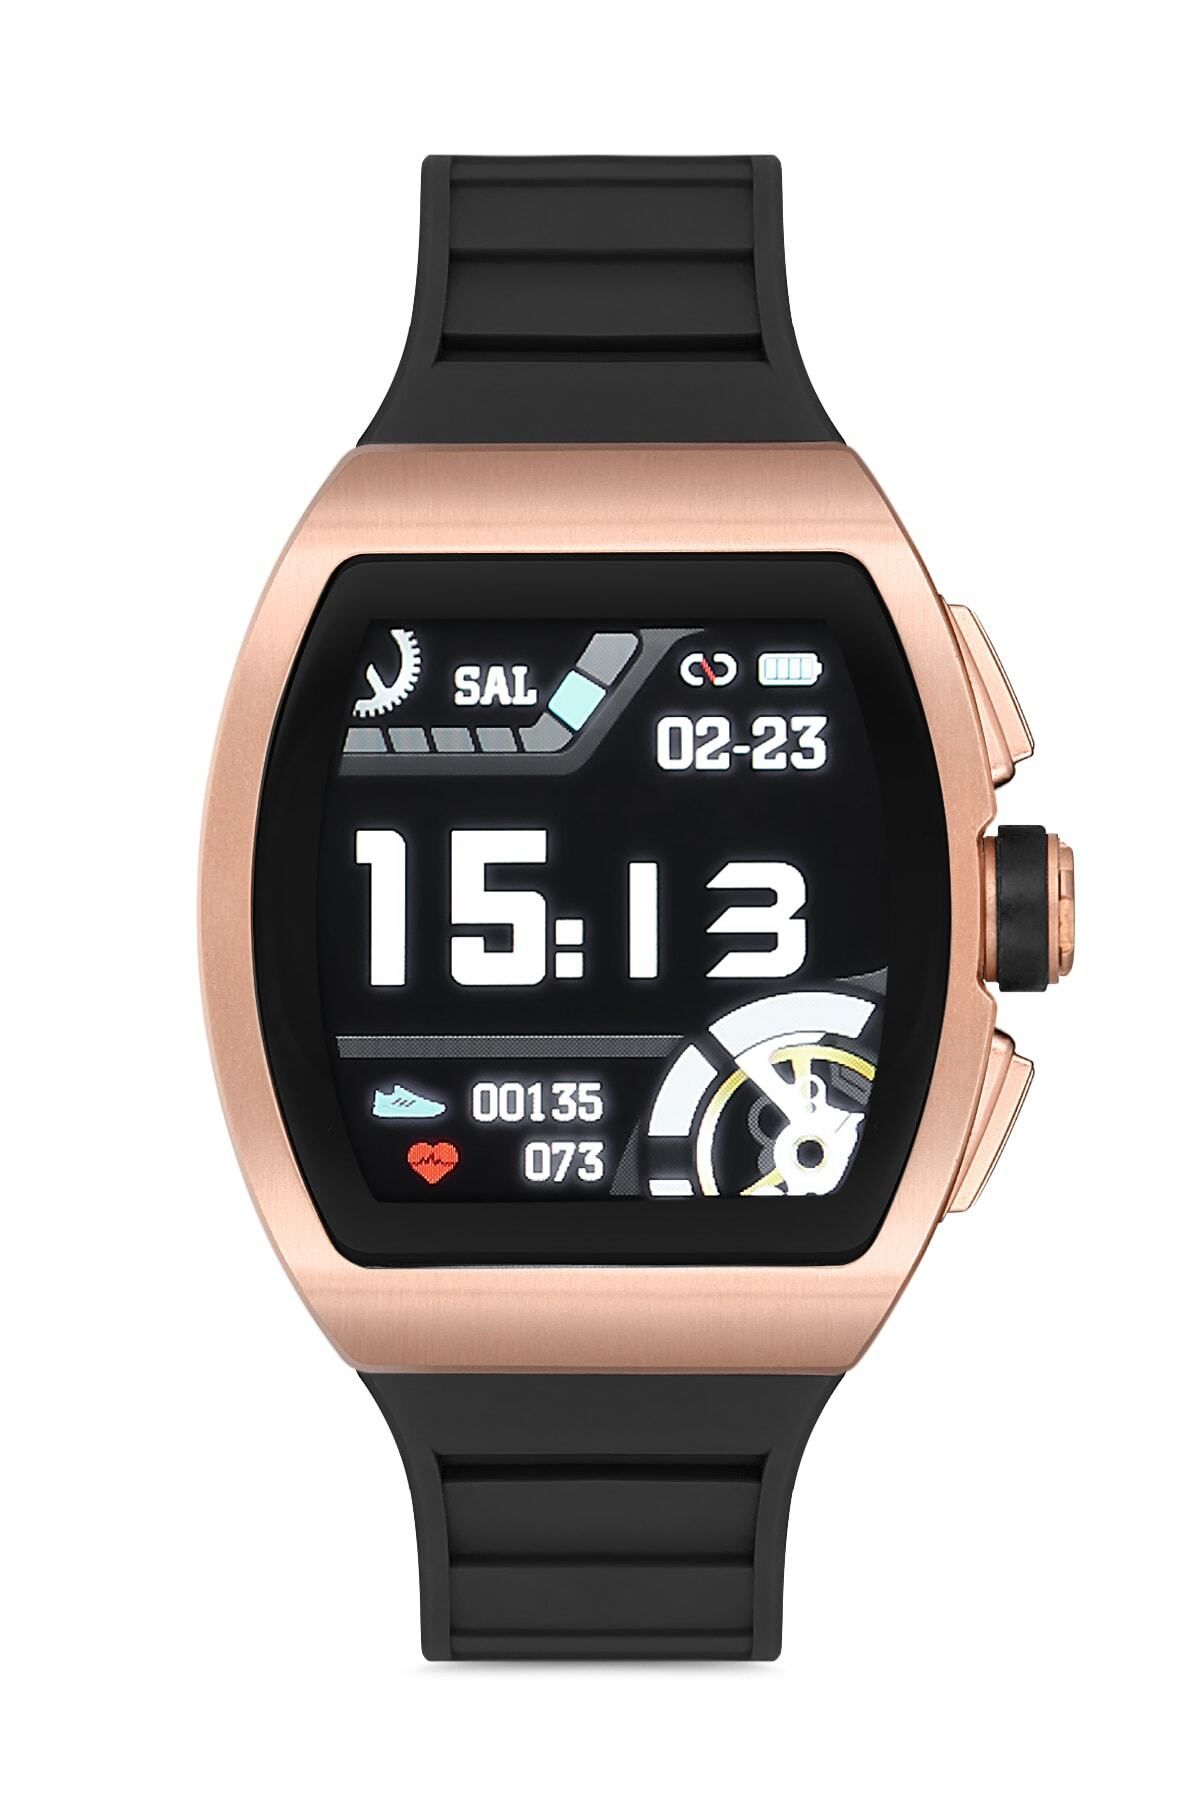 onlinekordon Woom Watch - Ios Android M1 Siyah Bronz Akıllı Saat Nabız Adım Uyku Tansiyon Ekg Lrbm1sb